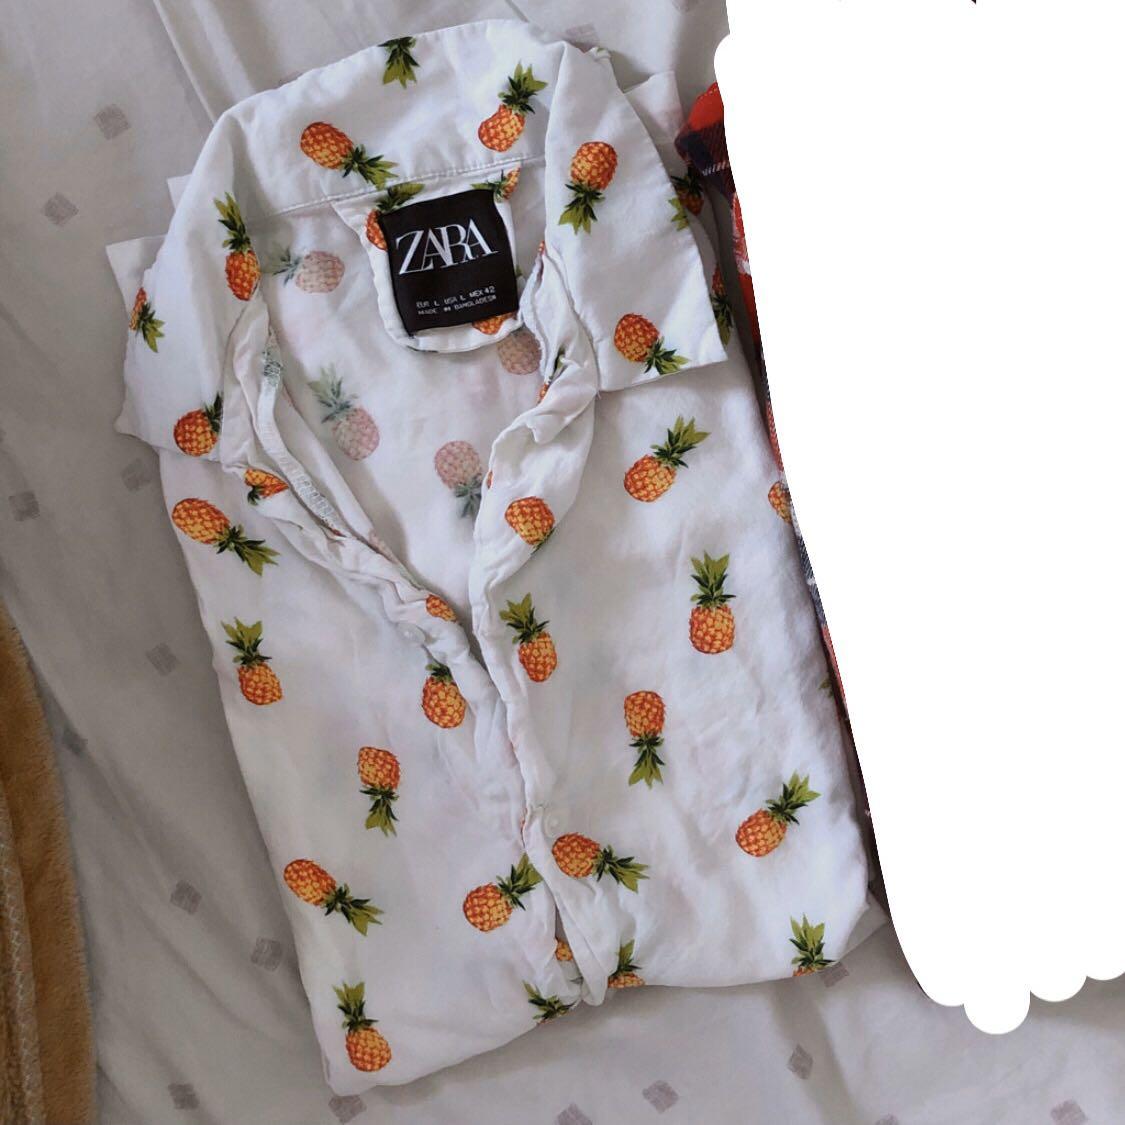 zara pineapple shirt